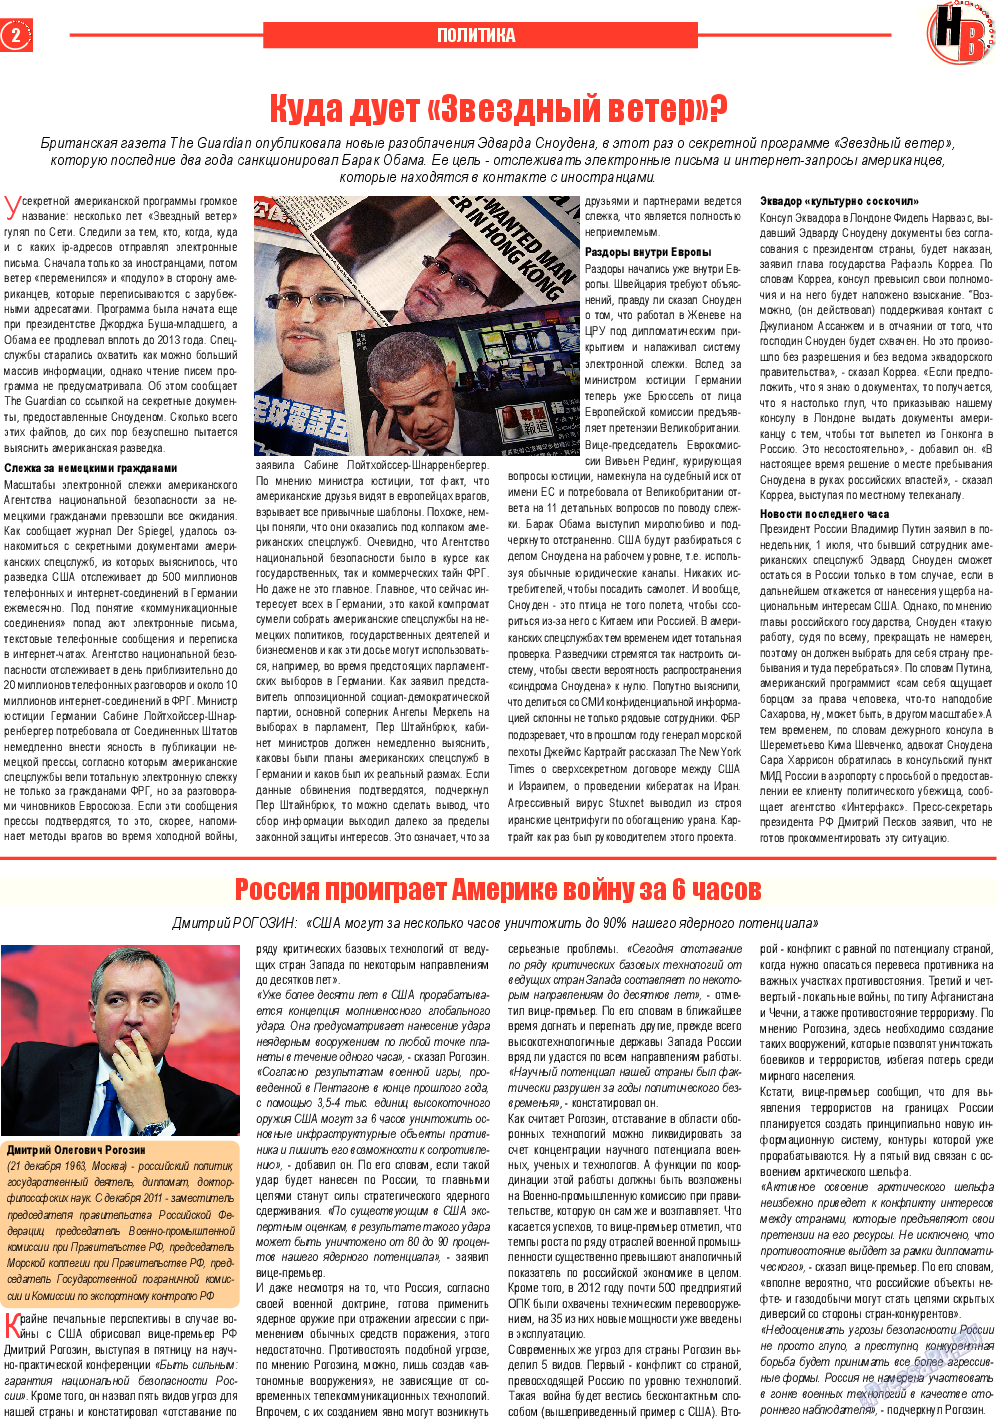 Наше время, газета. 2013 №7 стр.2